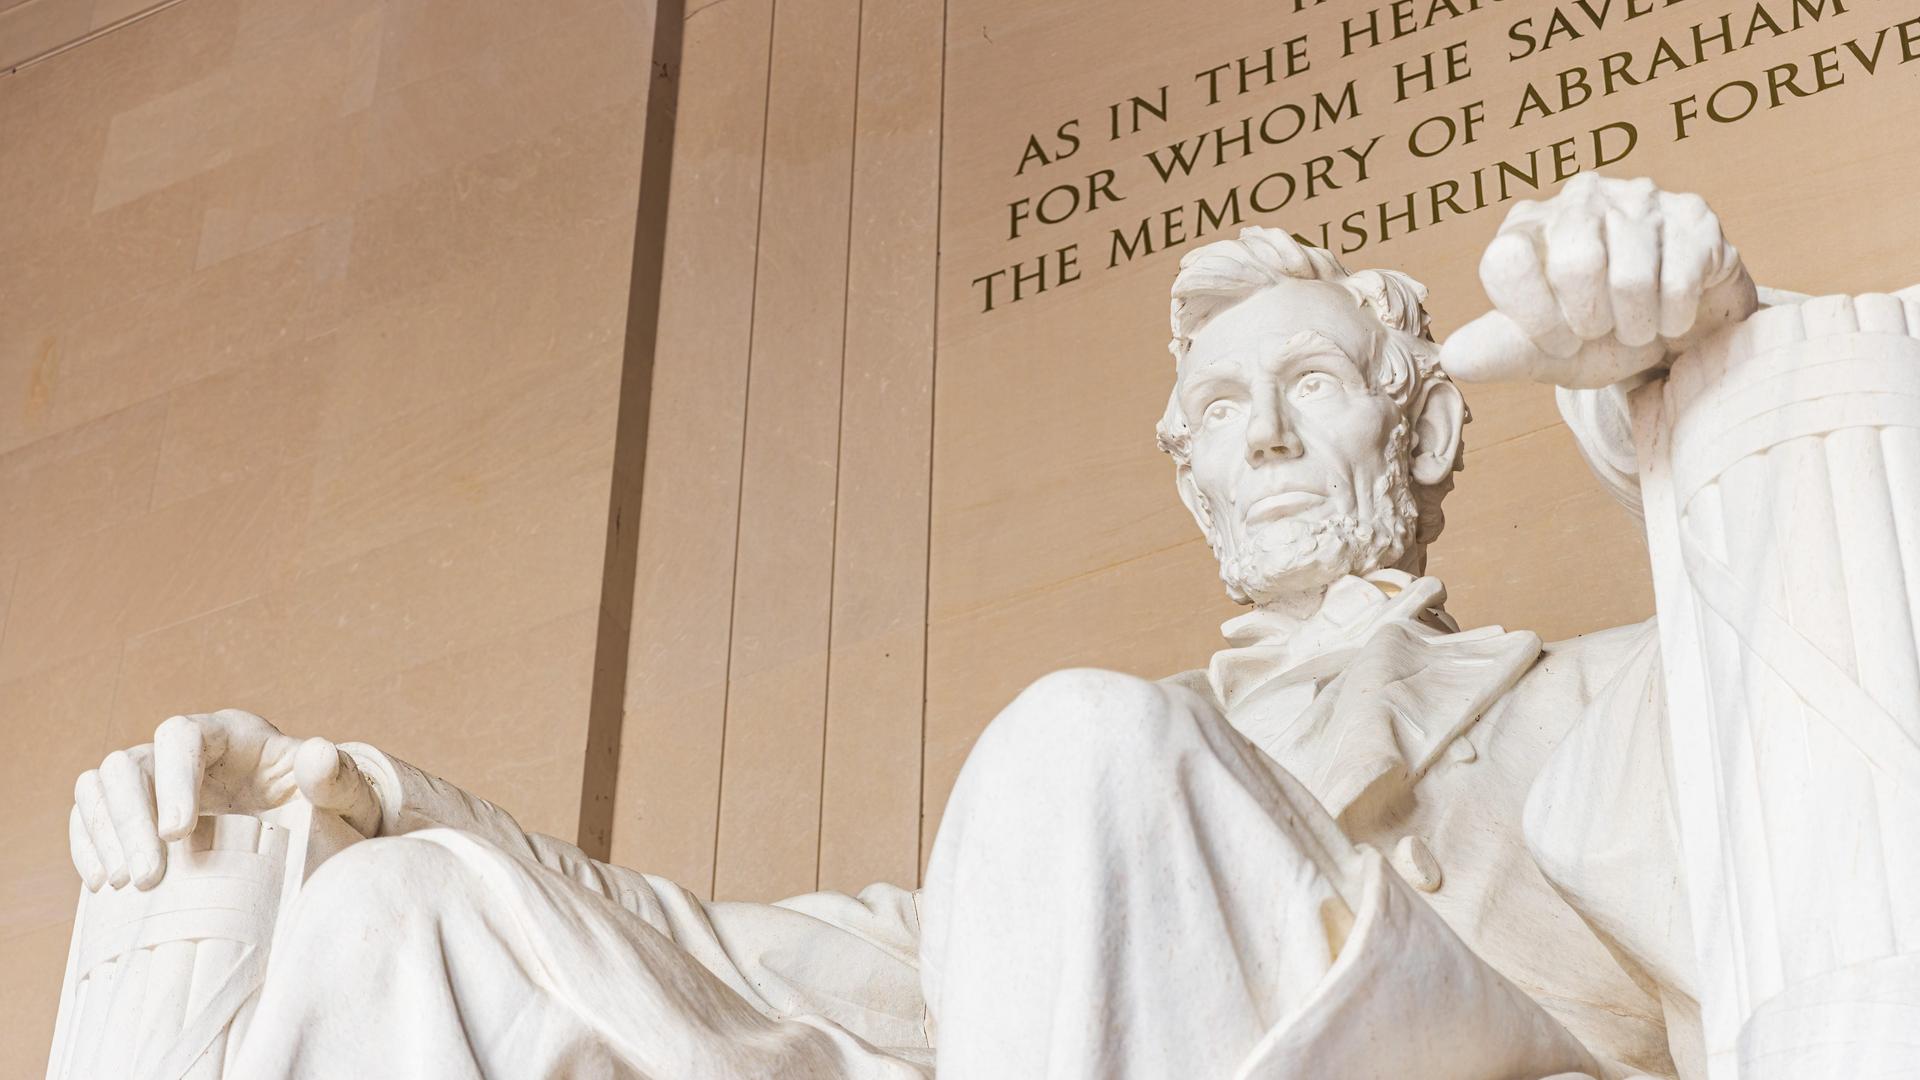 Die berühmte weiße Statue des Abraham Lincoln im Lincolm Memorial in Washington D.C.